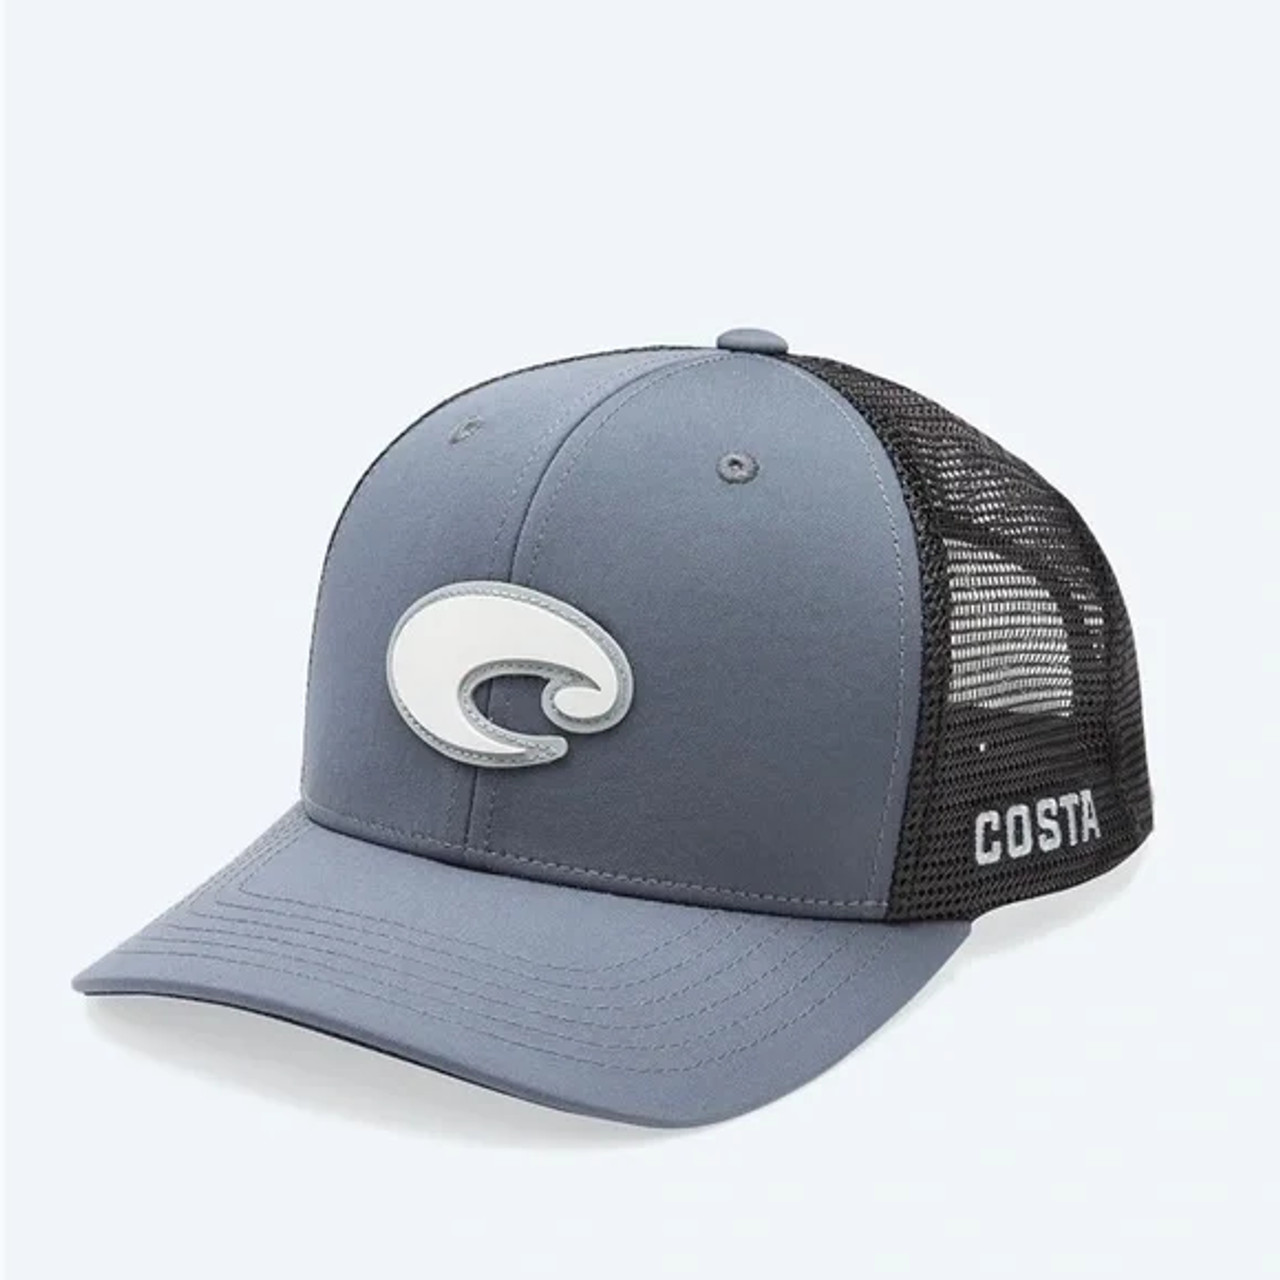 Costa Caps - Core performance Trucker - Grey - Billy's Western Wear